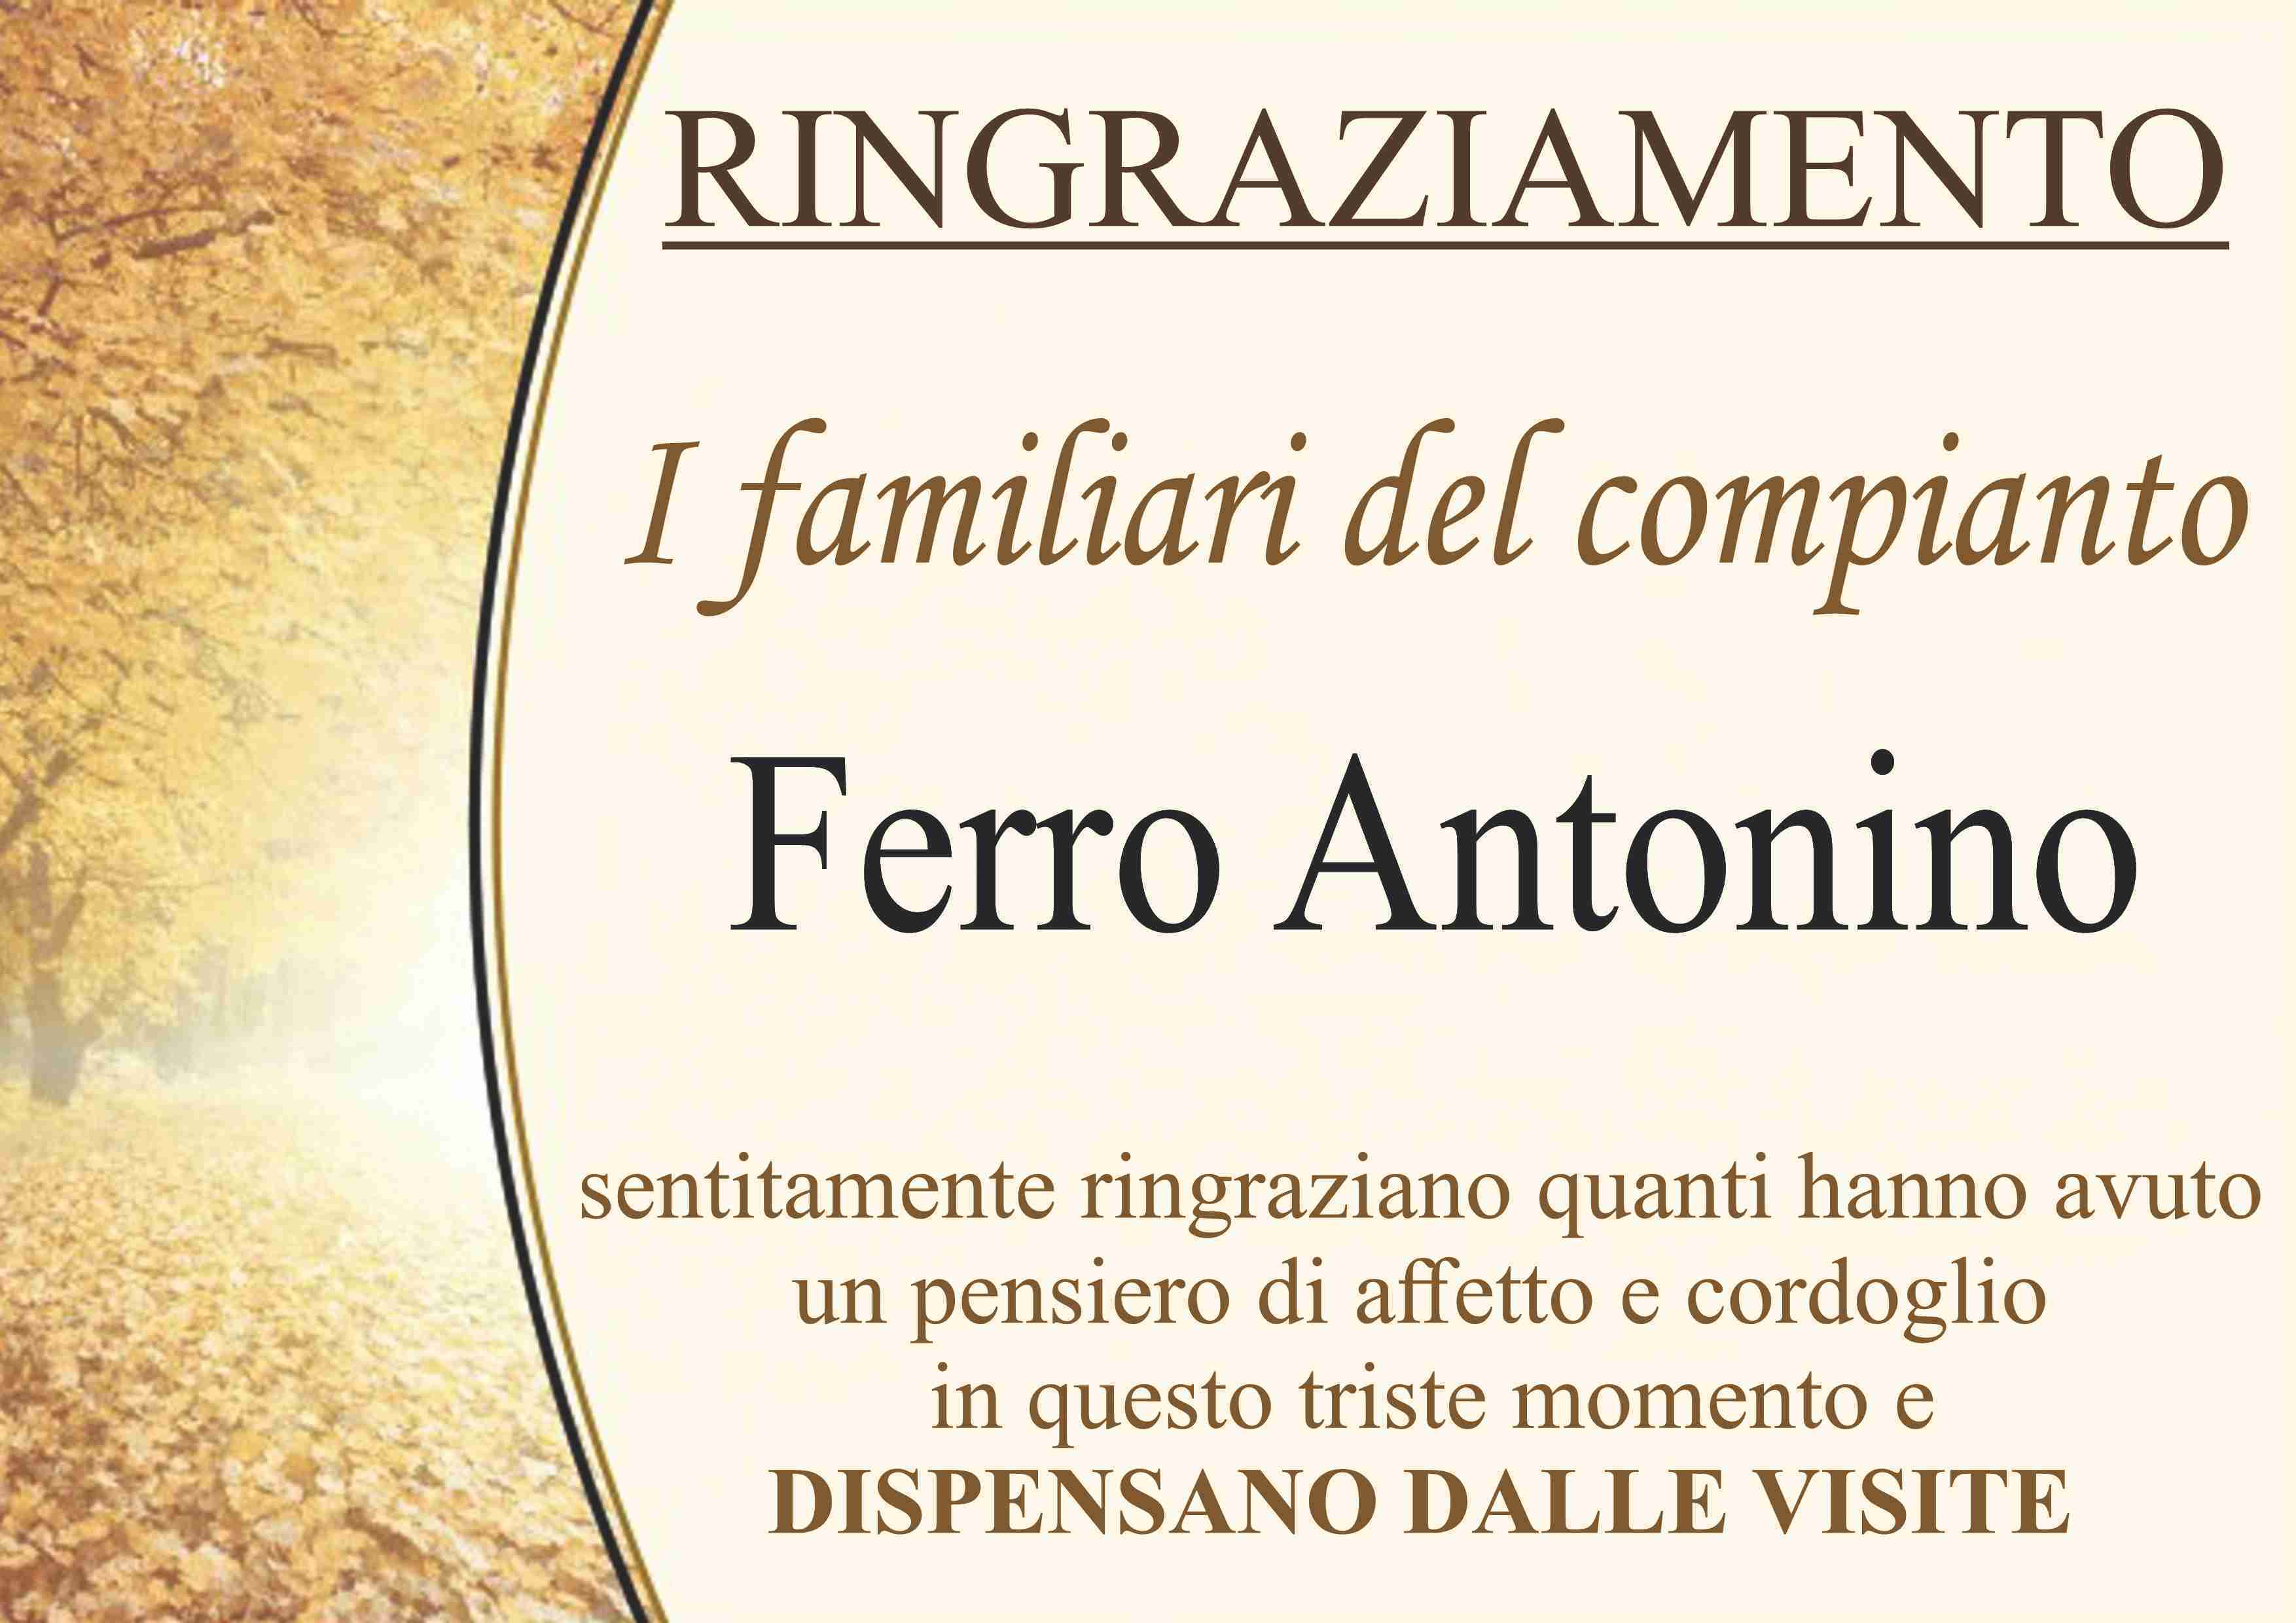 Antonino Ferro